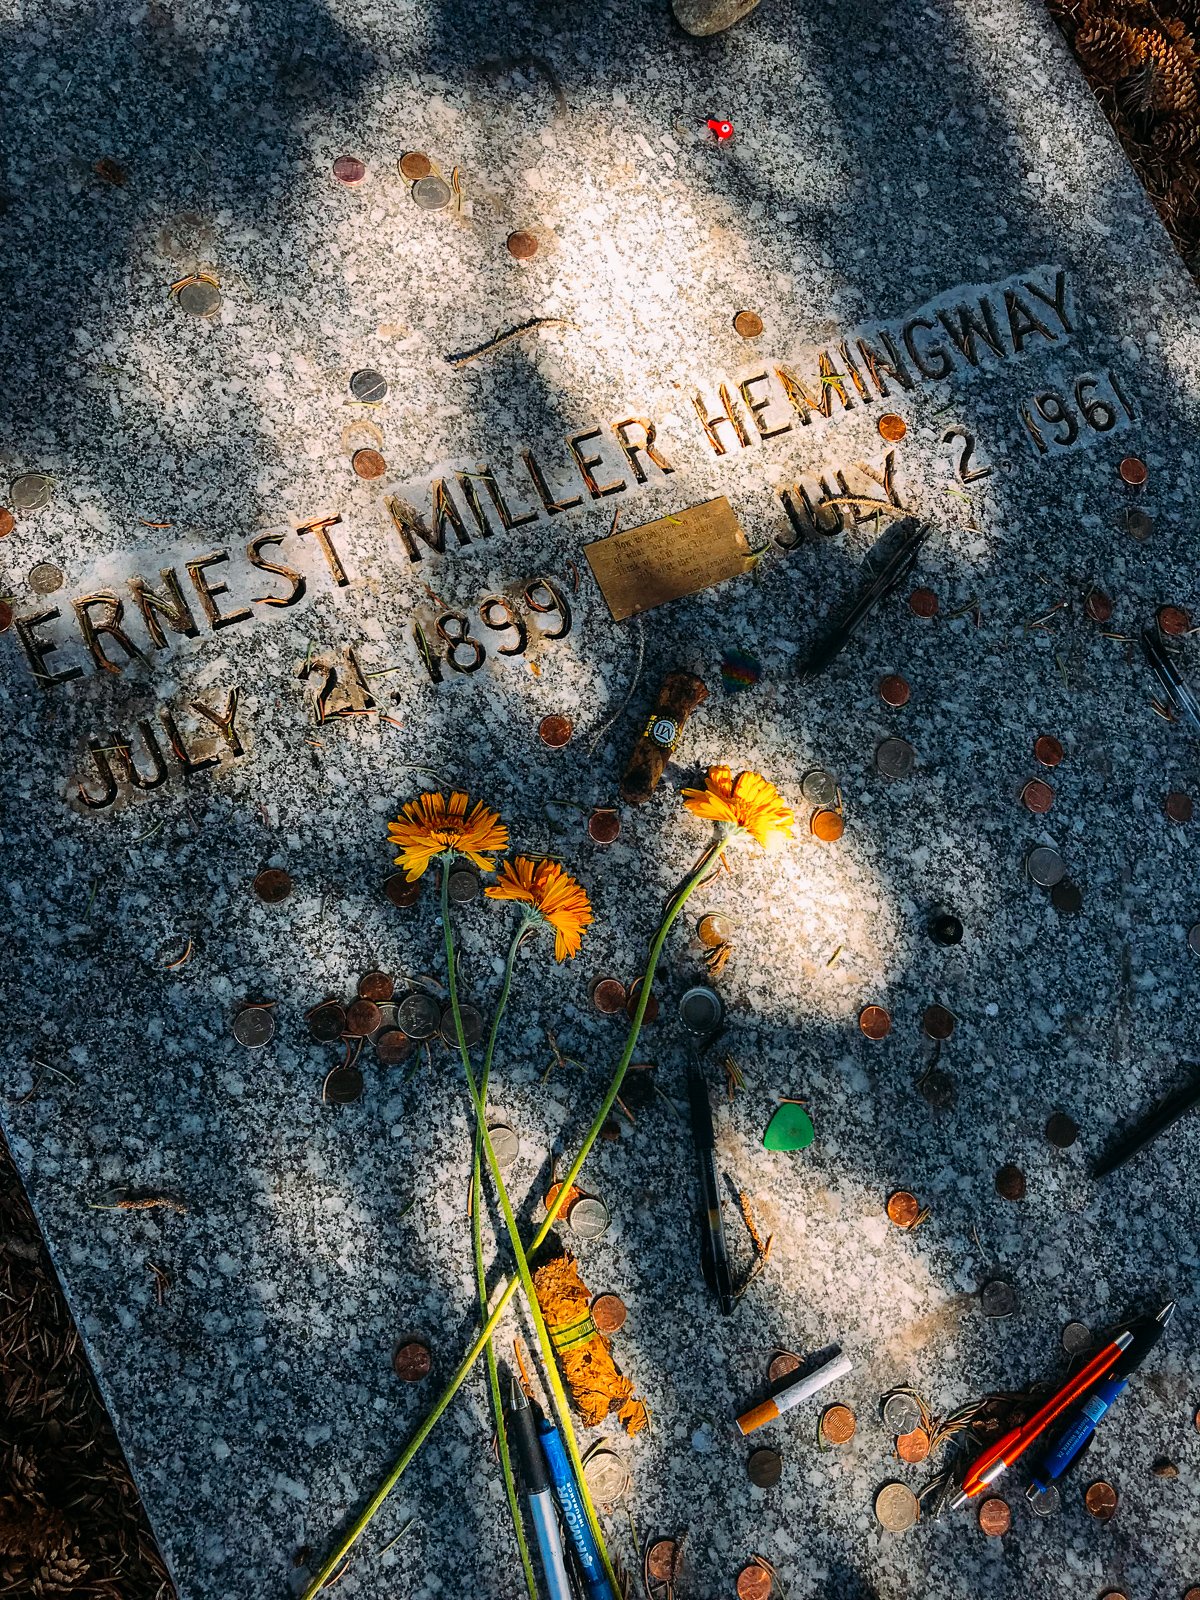 Ernest Hemingway Grave in Sun Valley, Idaho